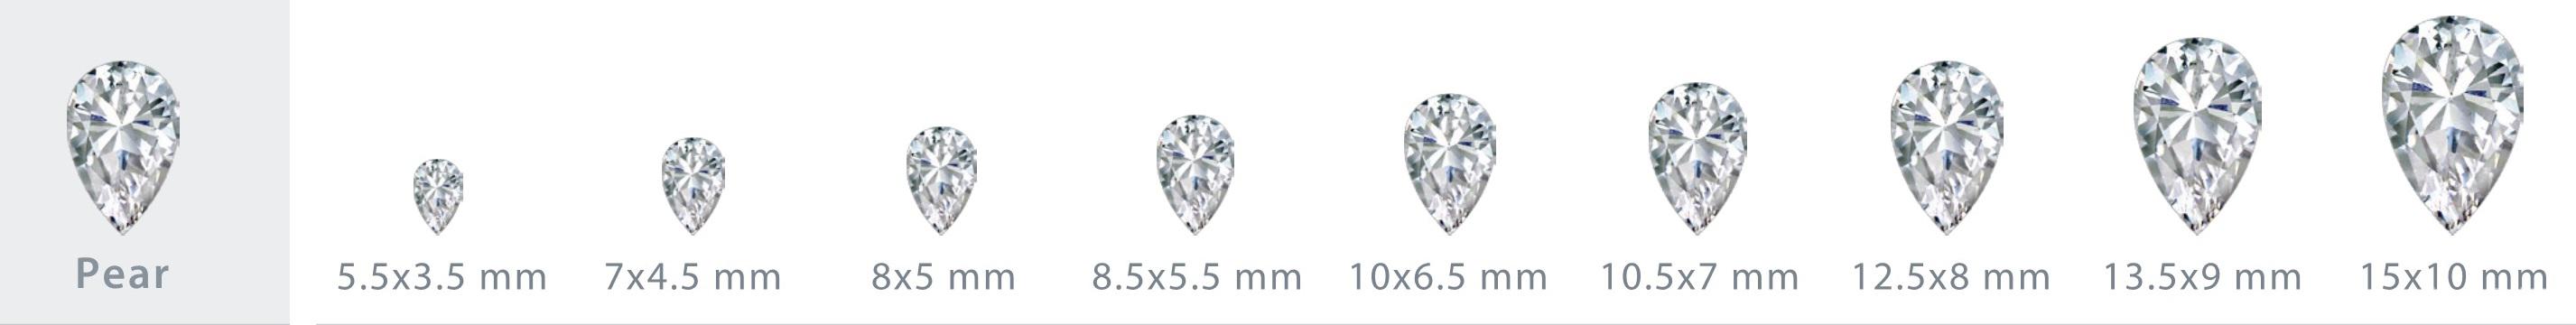 水滴形钻石尺寸对照表 我爱钻石网官网